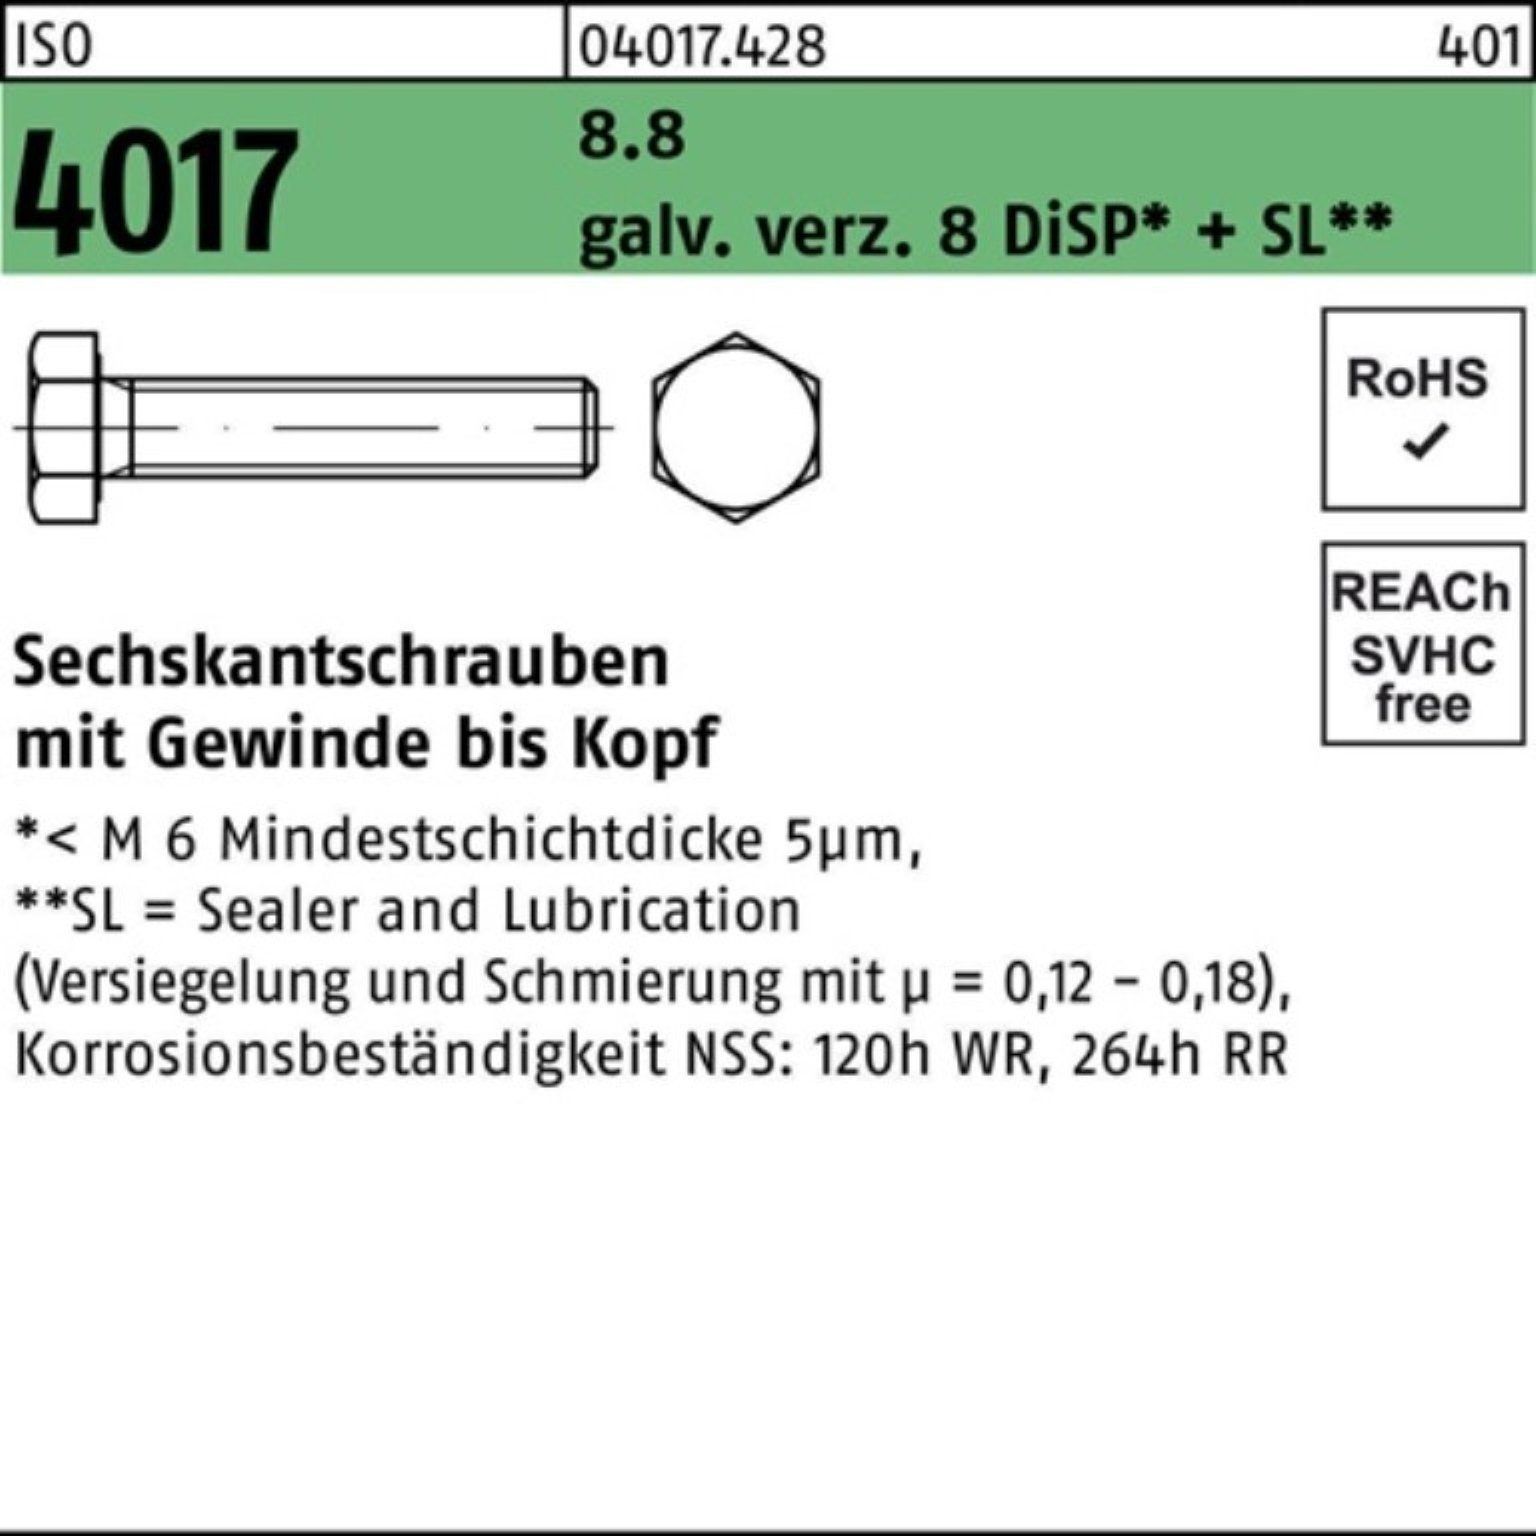 65 100er 4017 Bufab VG 8 Pack M20x ISO Sechskantschraube galv.verz. DiSP 8.8 Sechskantschraube